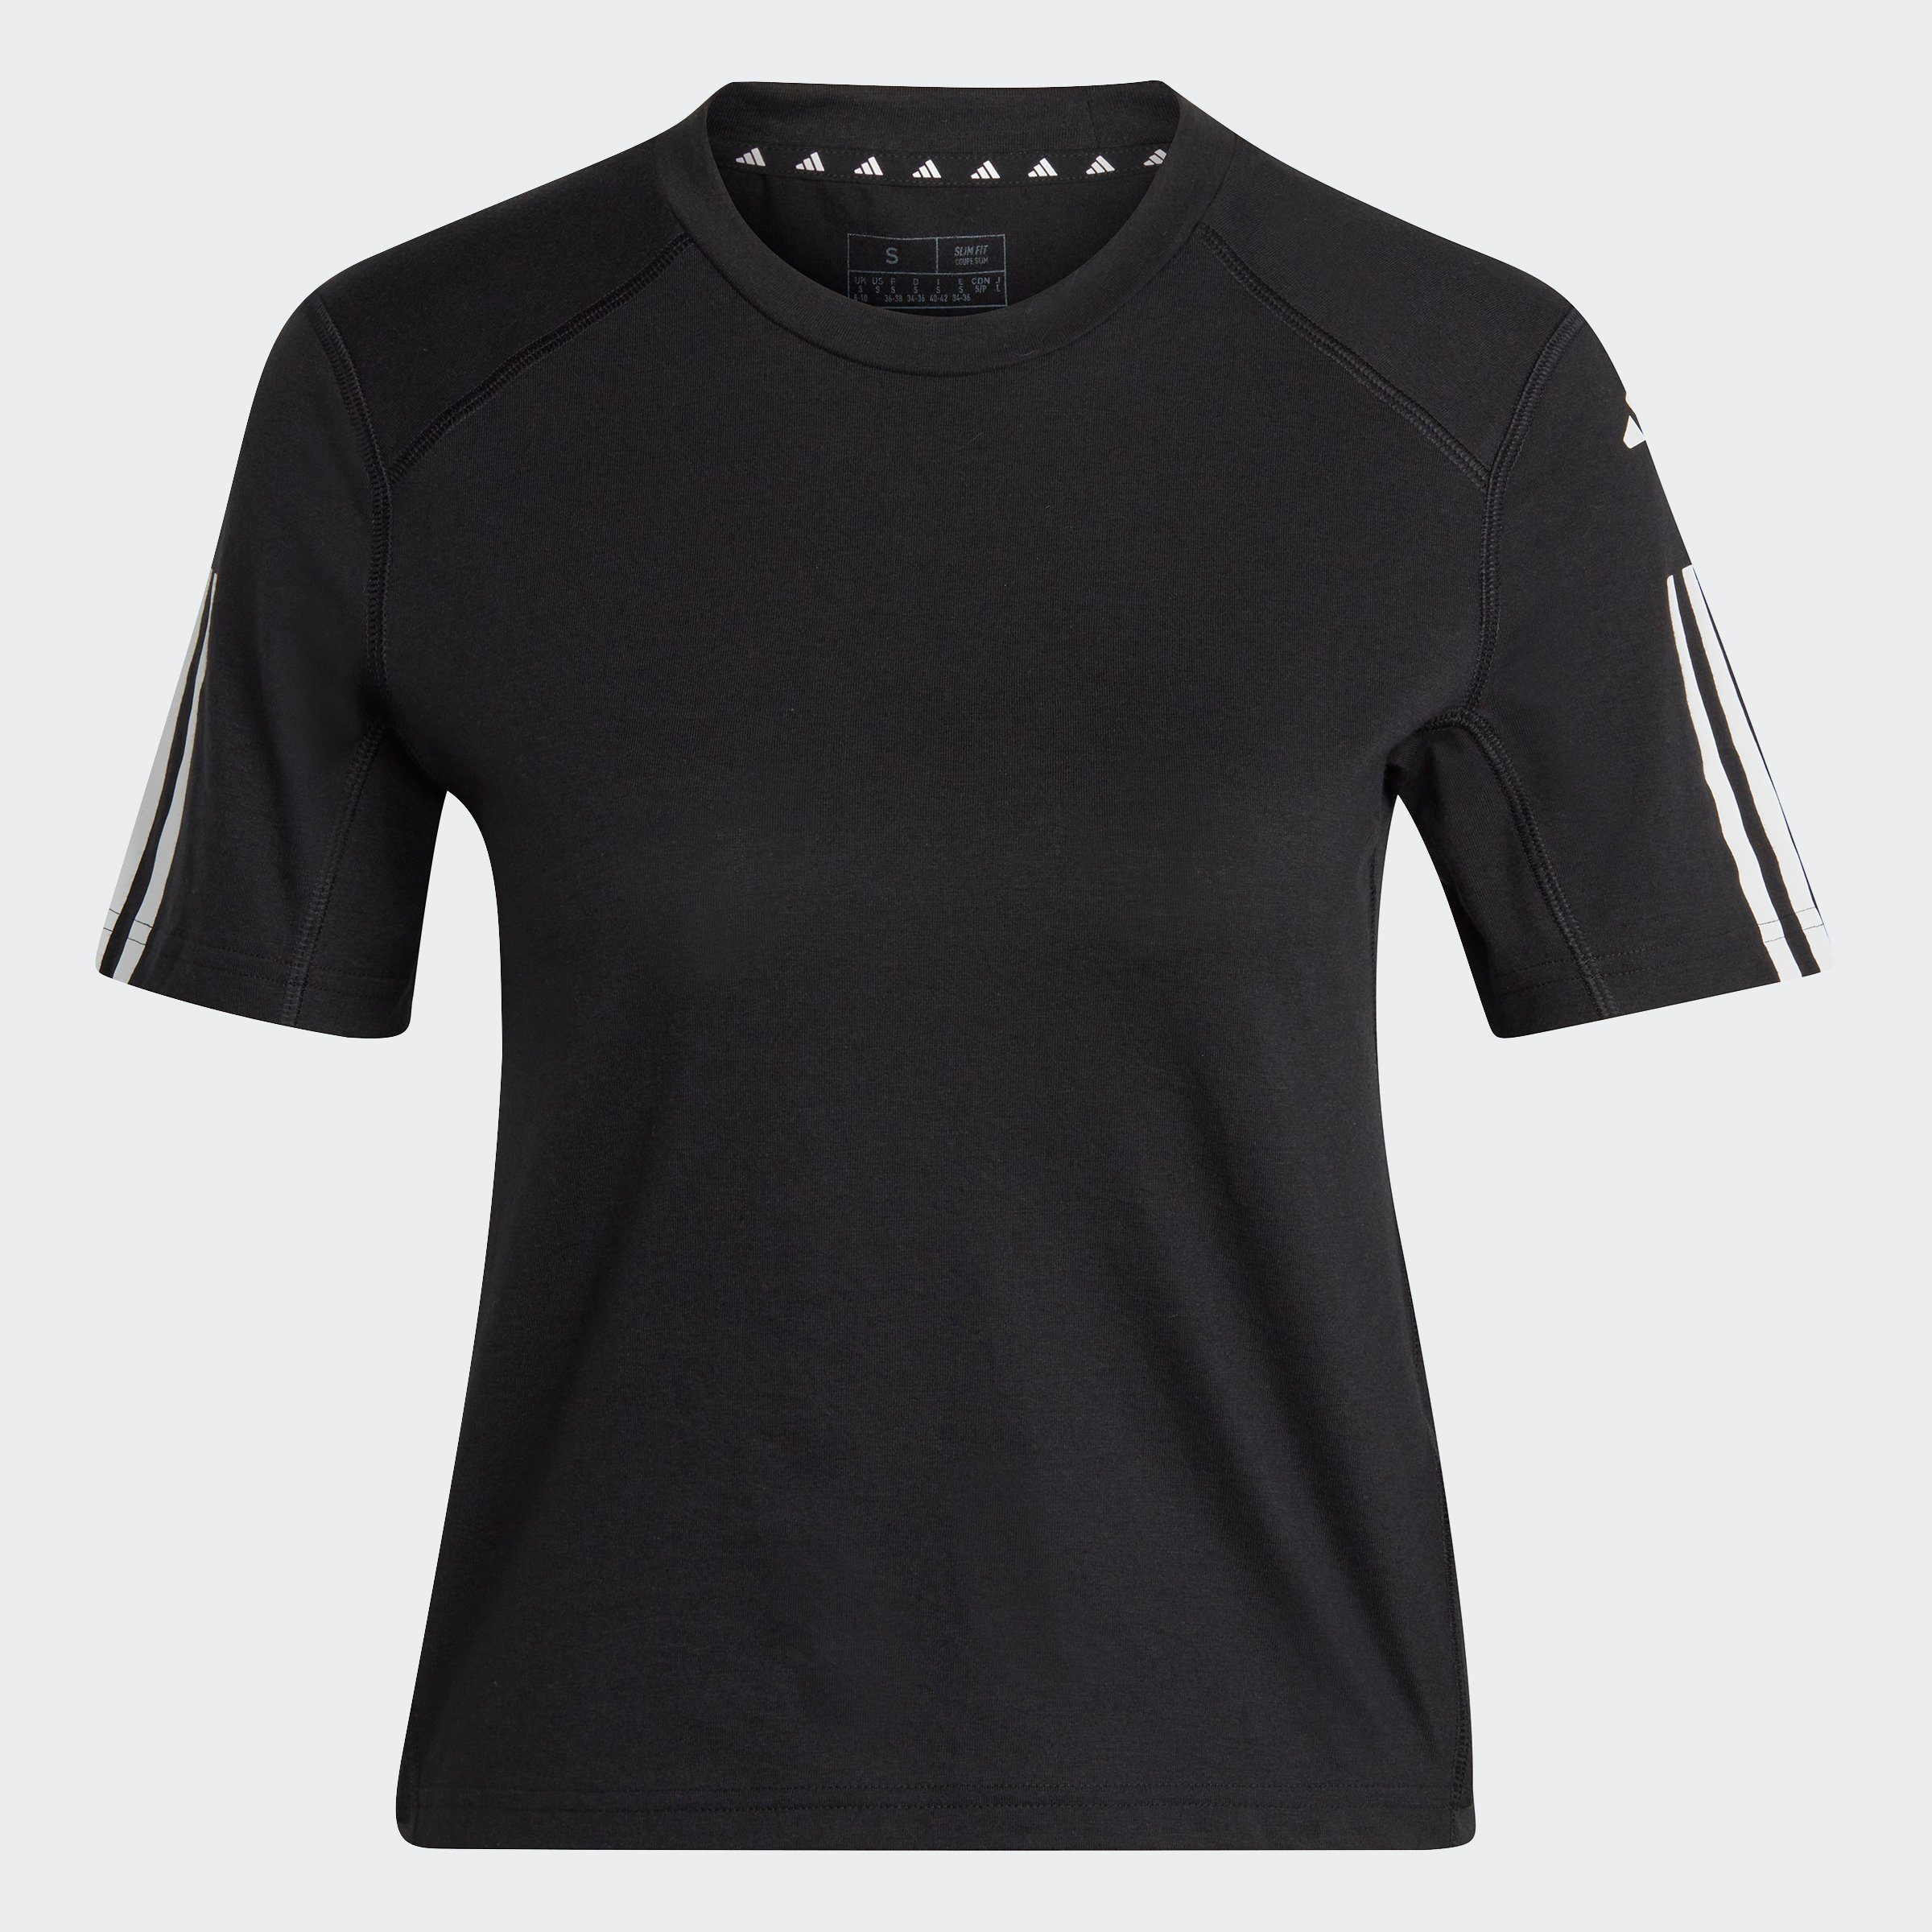 adidas Performance T-Shirt TRAIN CROP / TRAIN Black 3-STREIFEN White ESSENTIALS COTTON